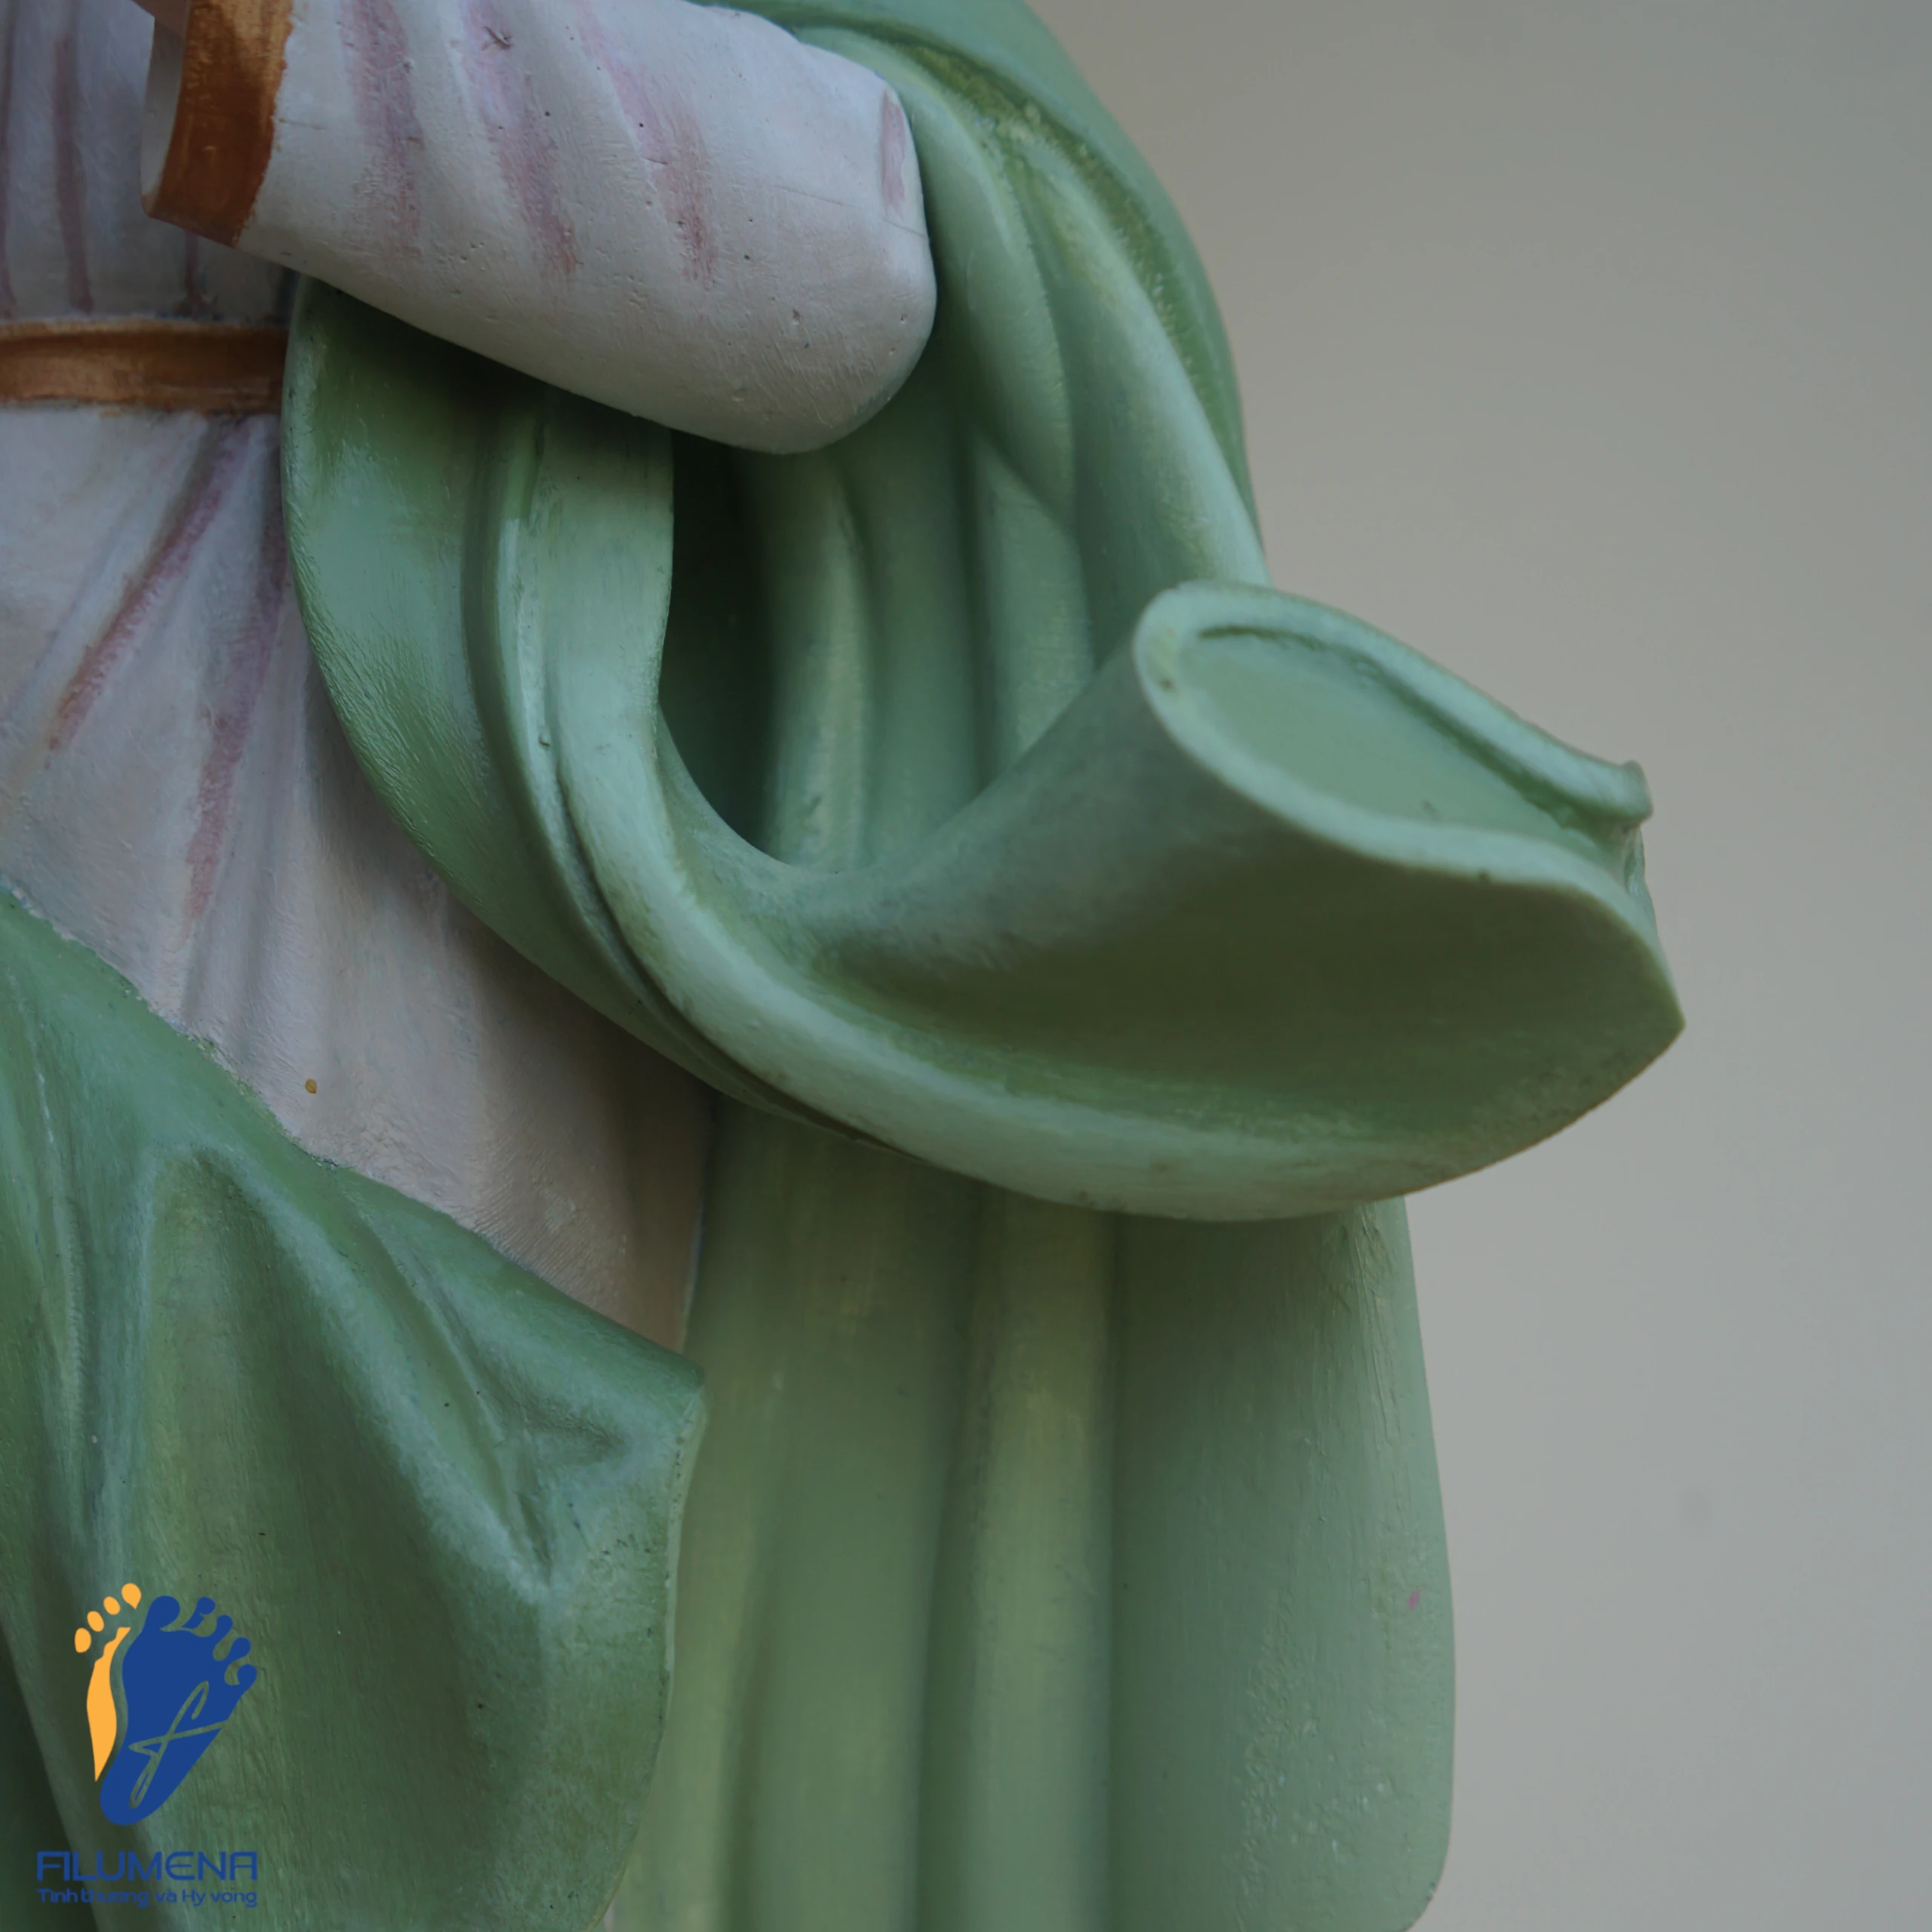 Tượng Đức Mẹ Vô Nhiễm Nguyên Tội màu xanh cốm (mẫu tượng do Filumena sáng tác)